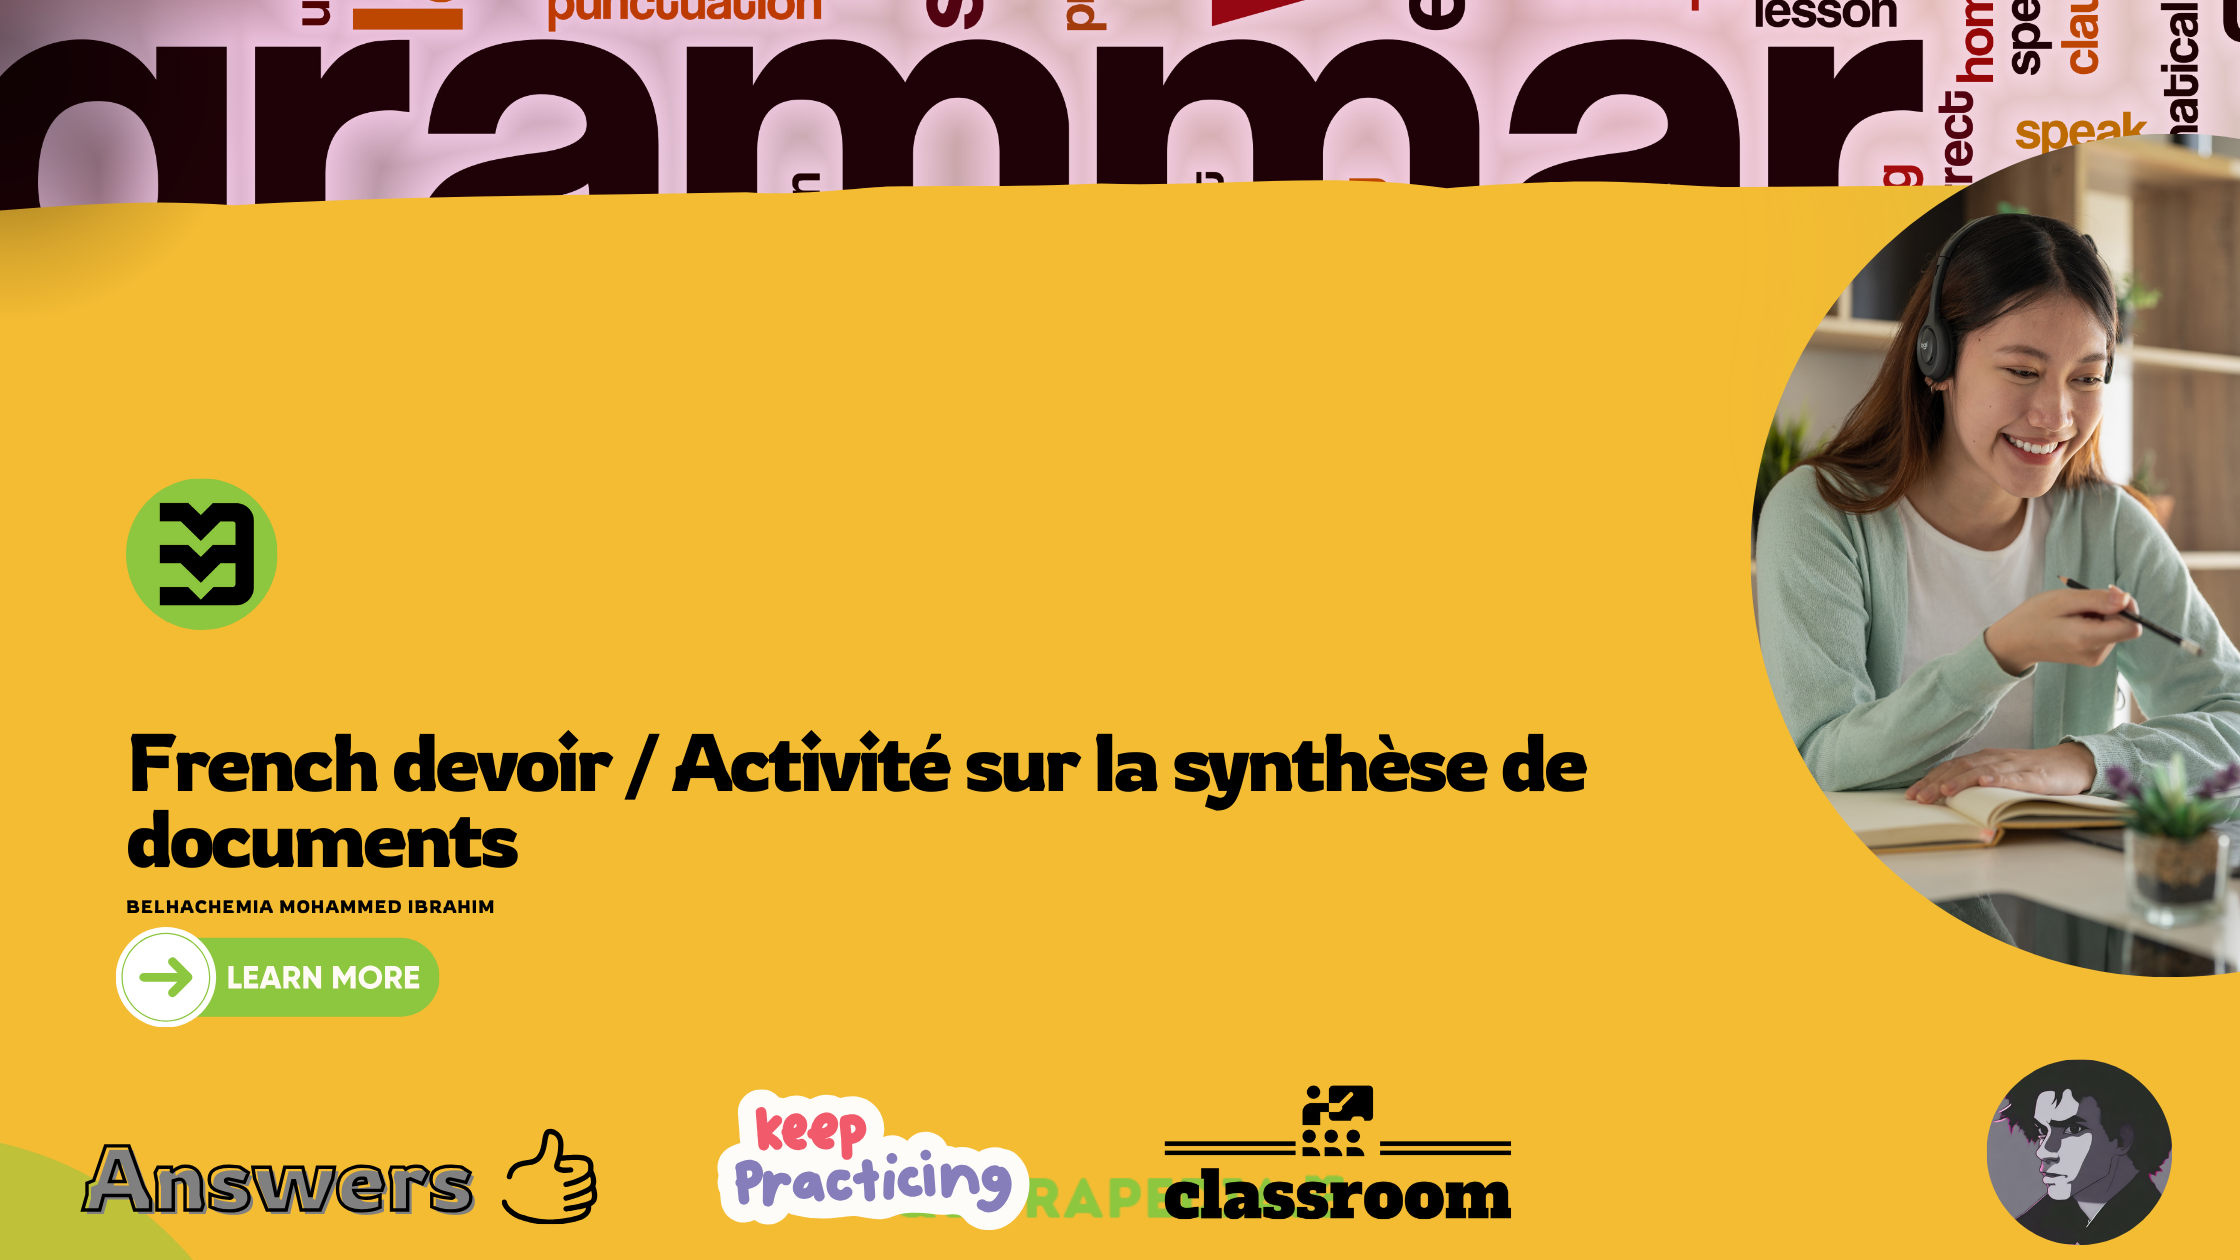 French devoir / Activité sur la synthèse de documents